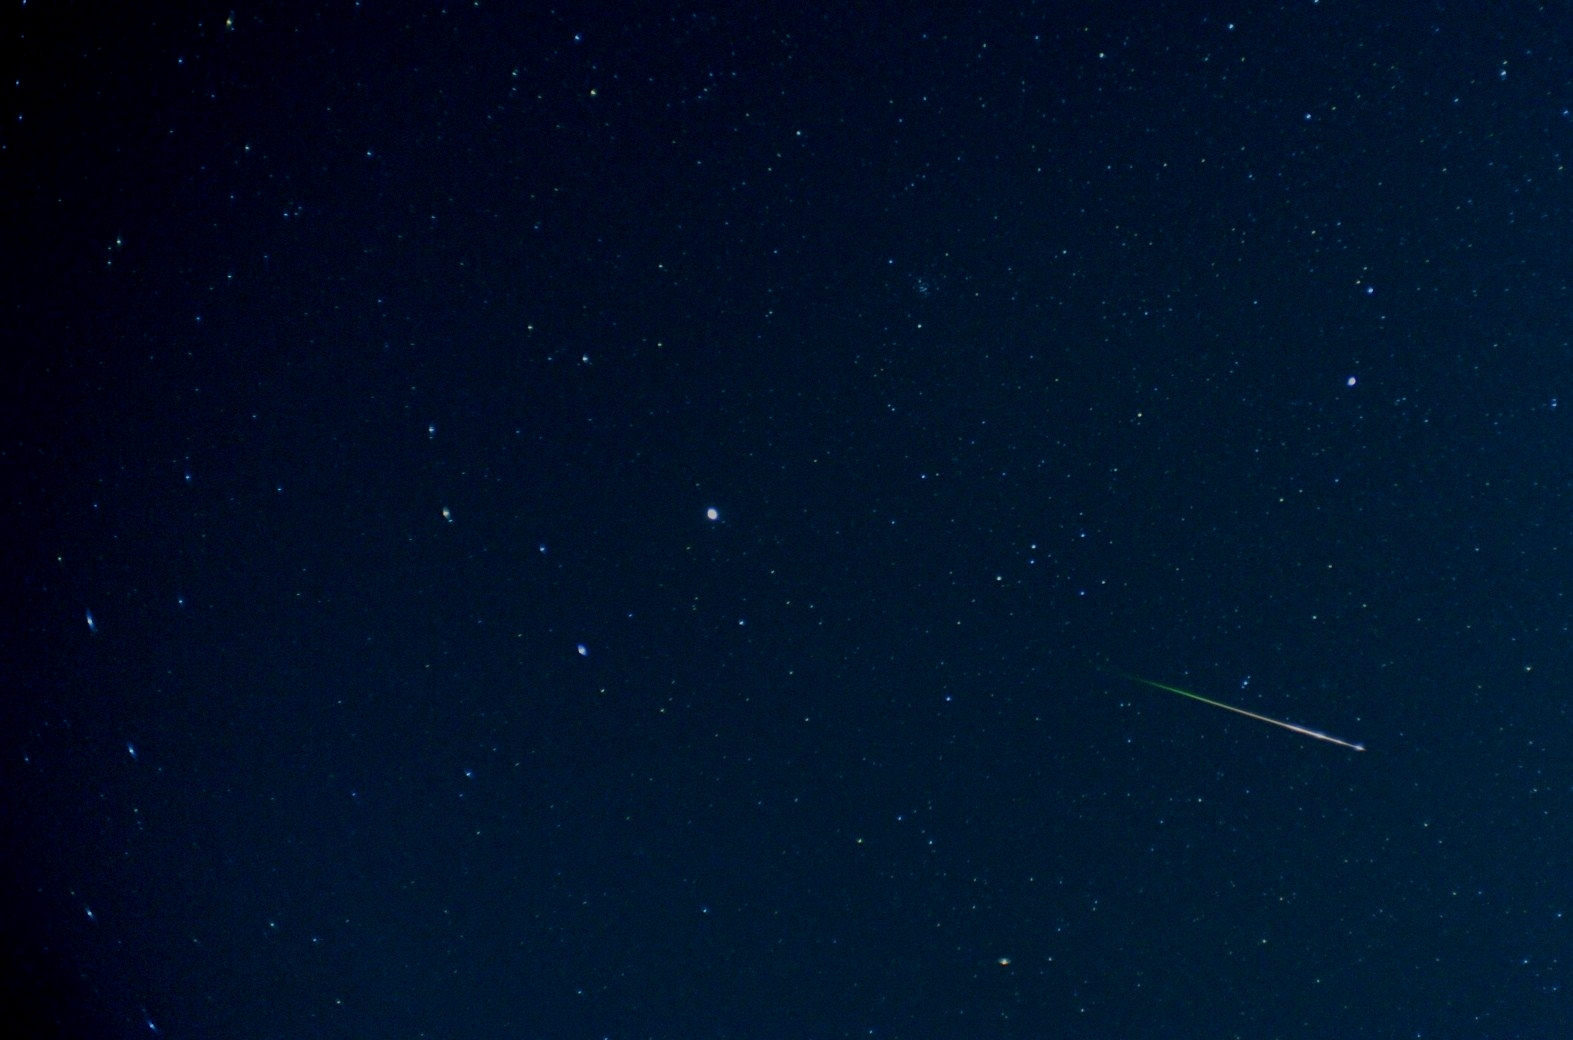 しし座流星群　2014.11.18　am:4:30 中央付近の輝星は木星